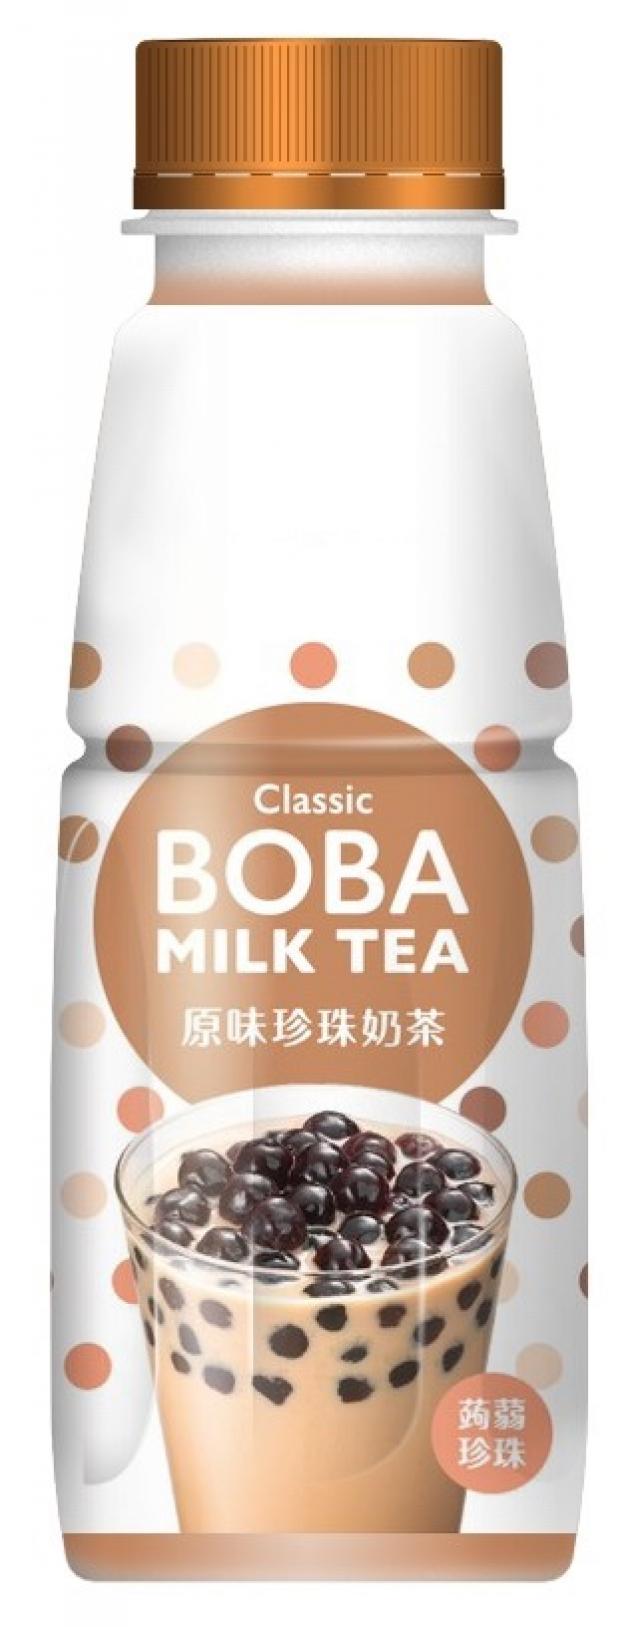 Classic Boba Milk Tea - Royal Black Tea Flavor